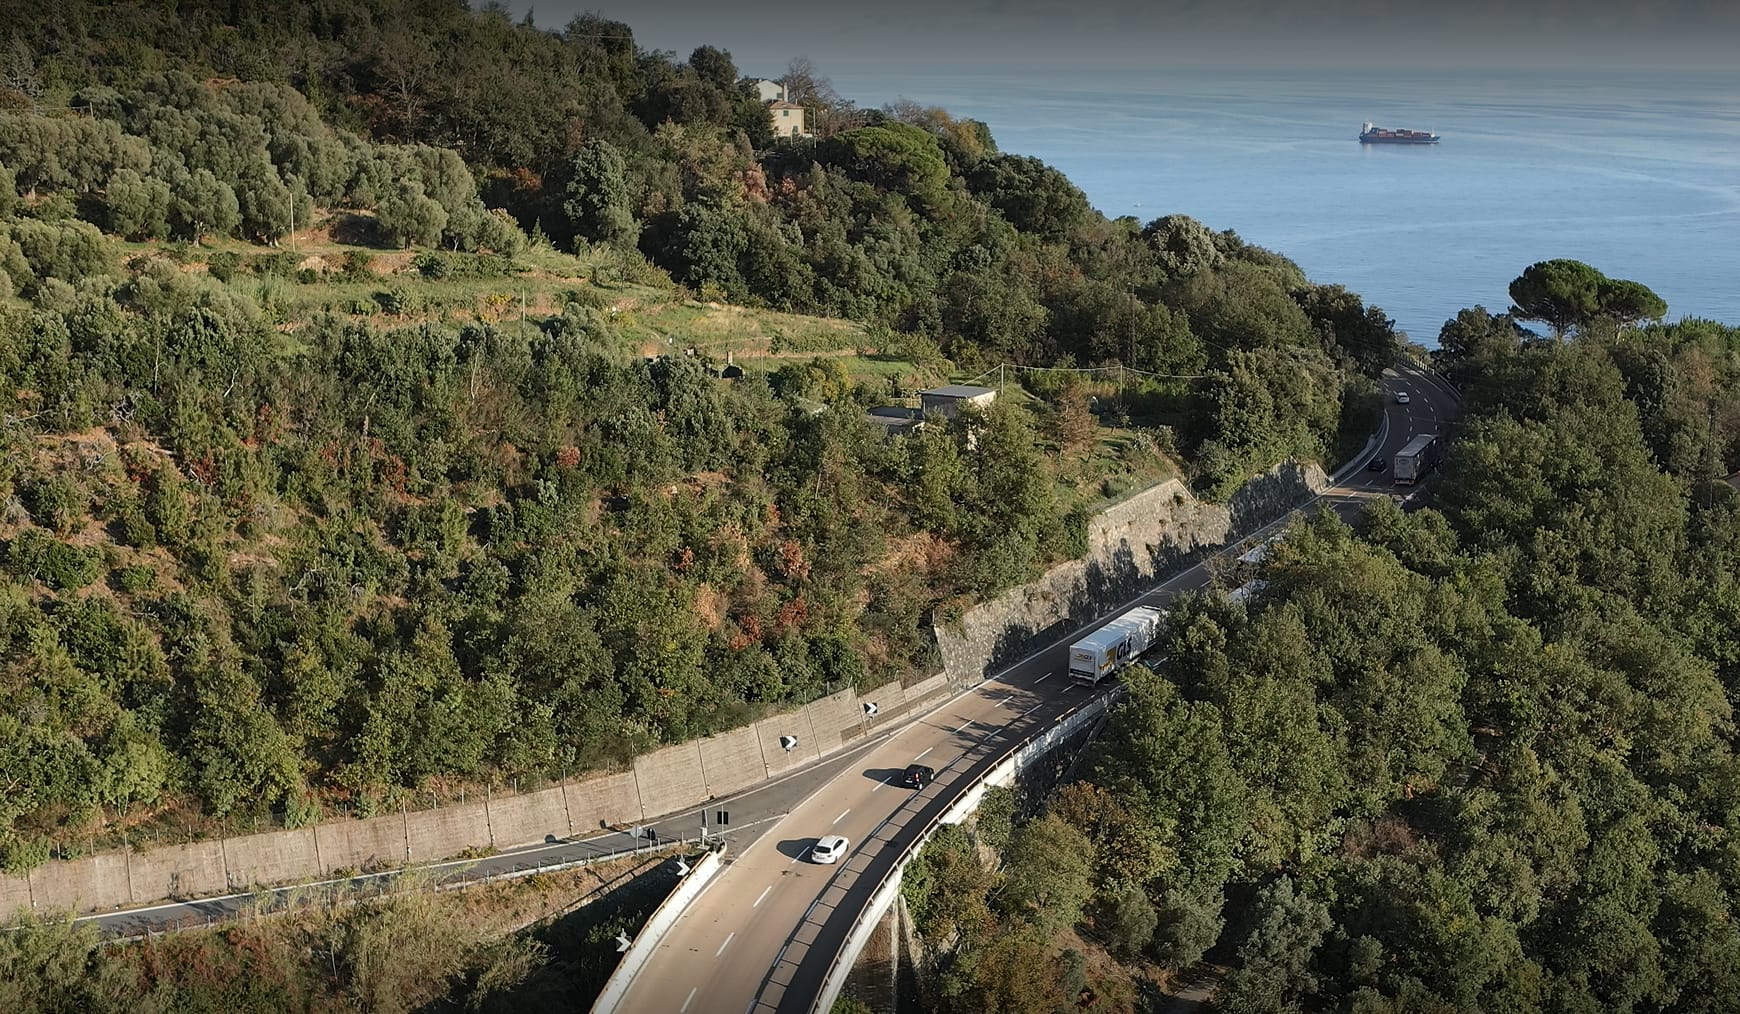 Arrivano in Italia i droni per controllare le strade, ecco dove sono utilizzati